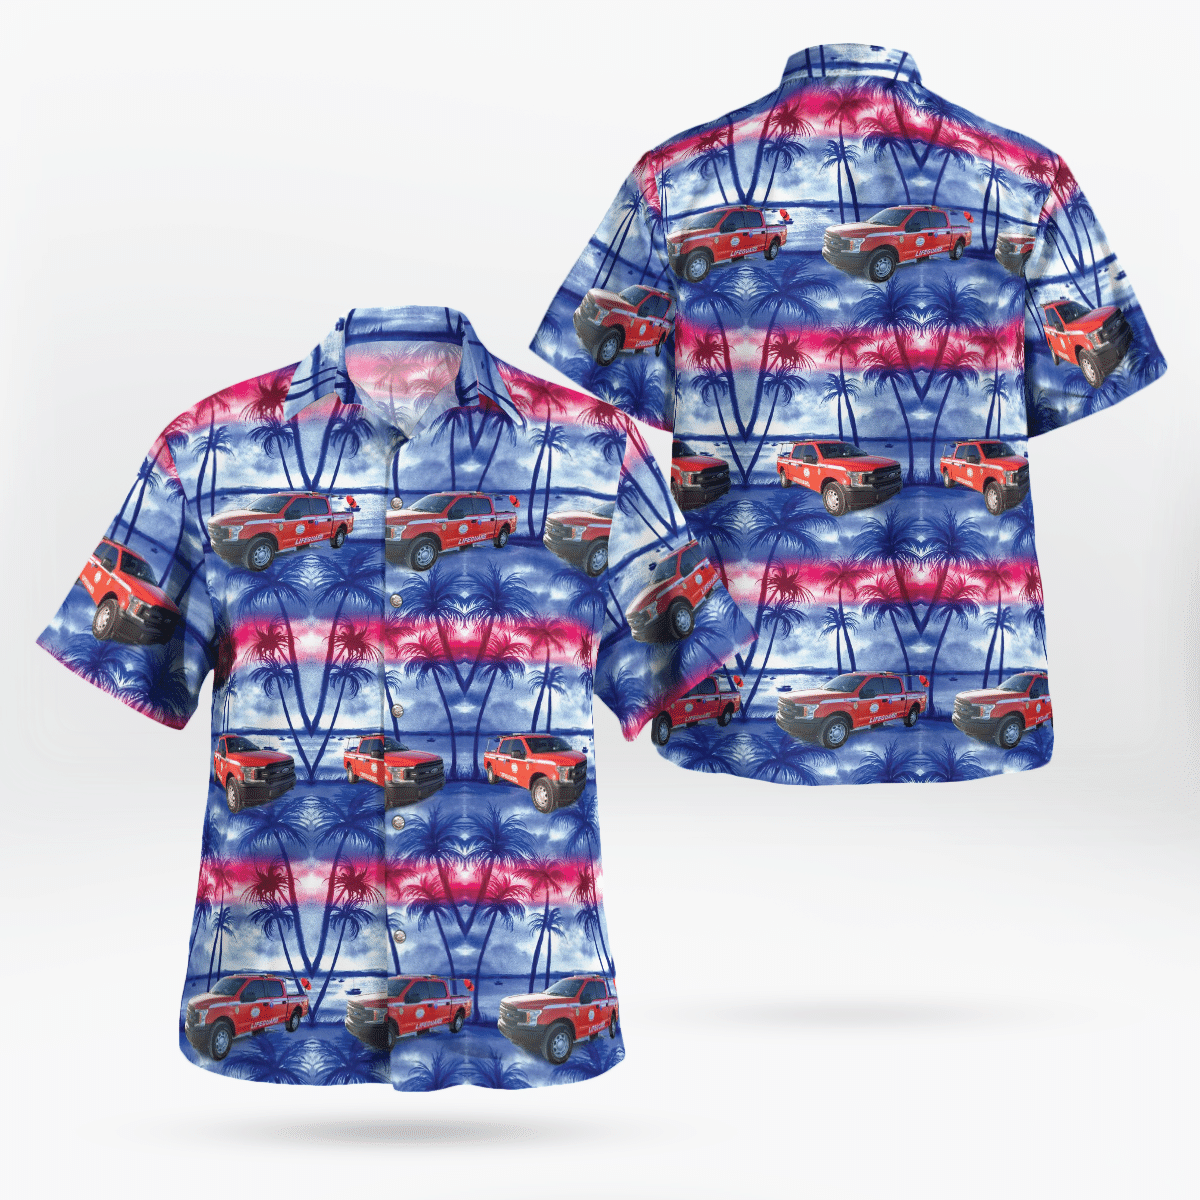 You won't regret buying these Aloha Shirt 154